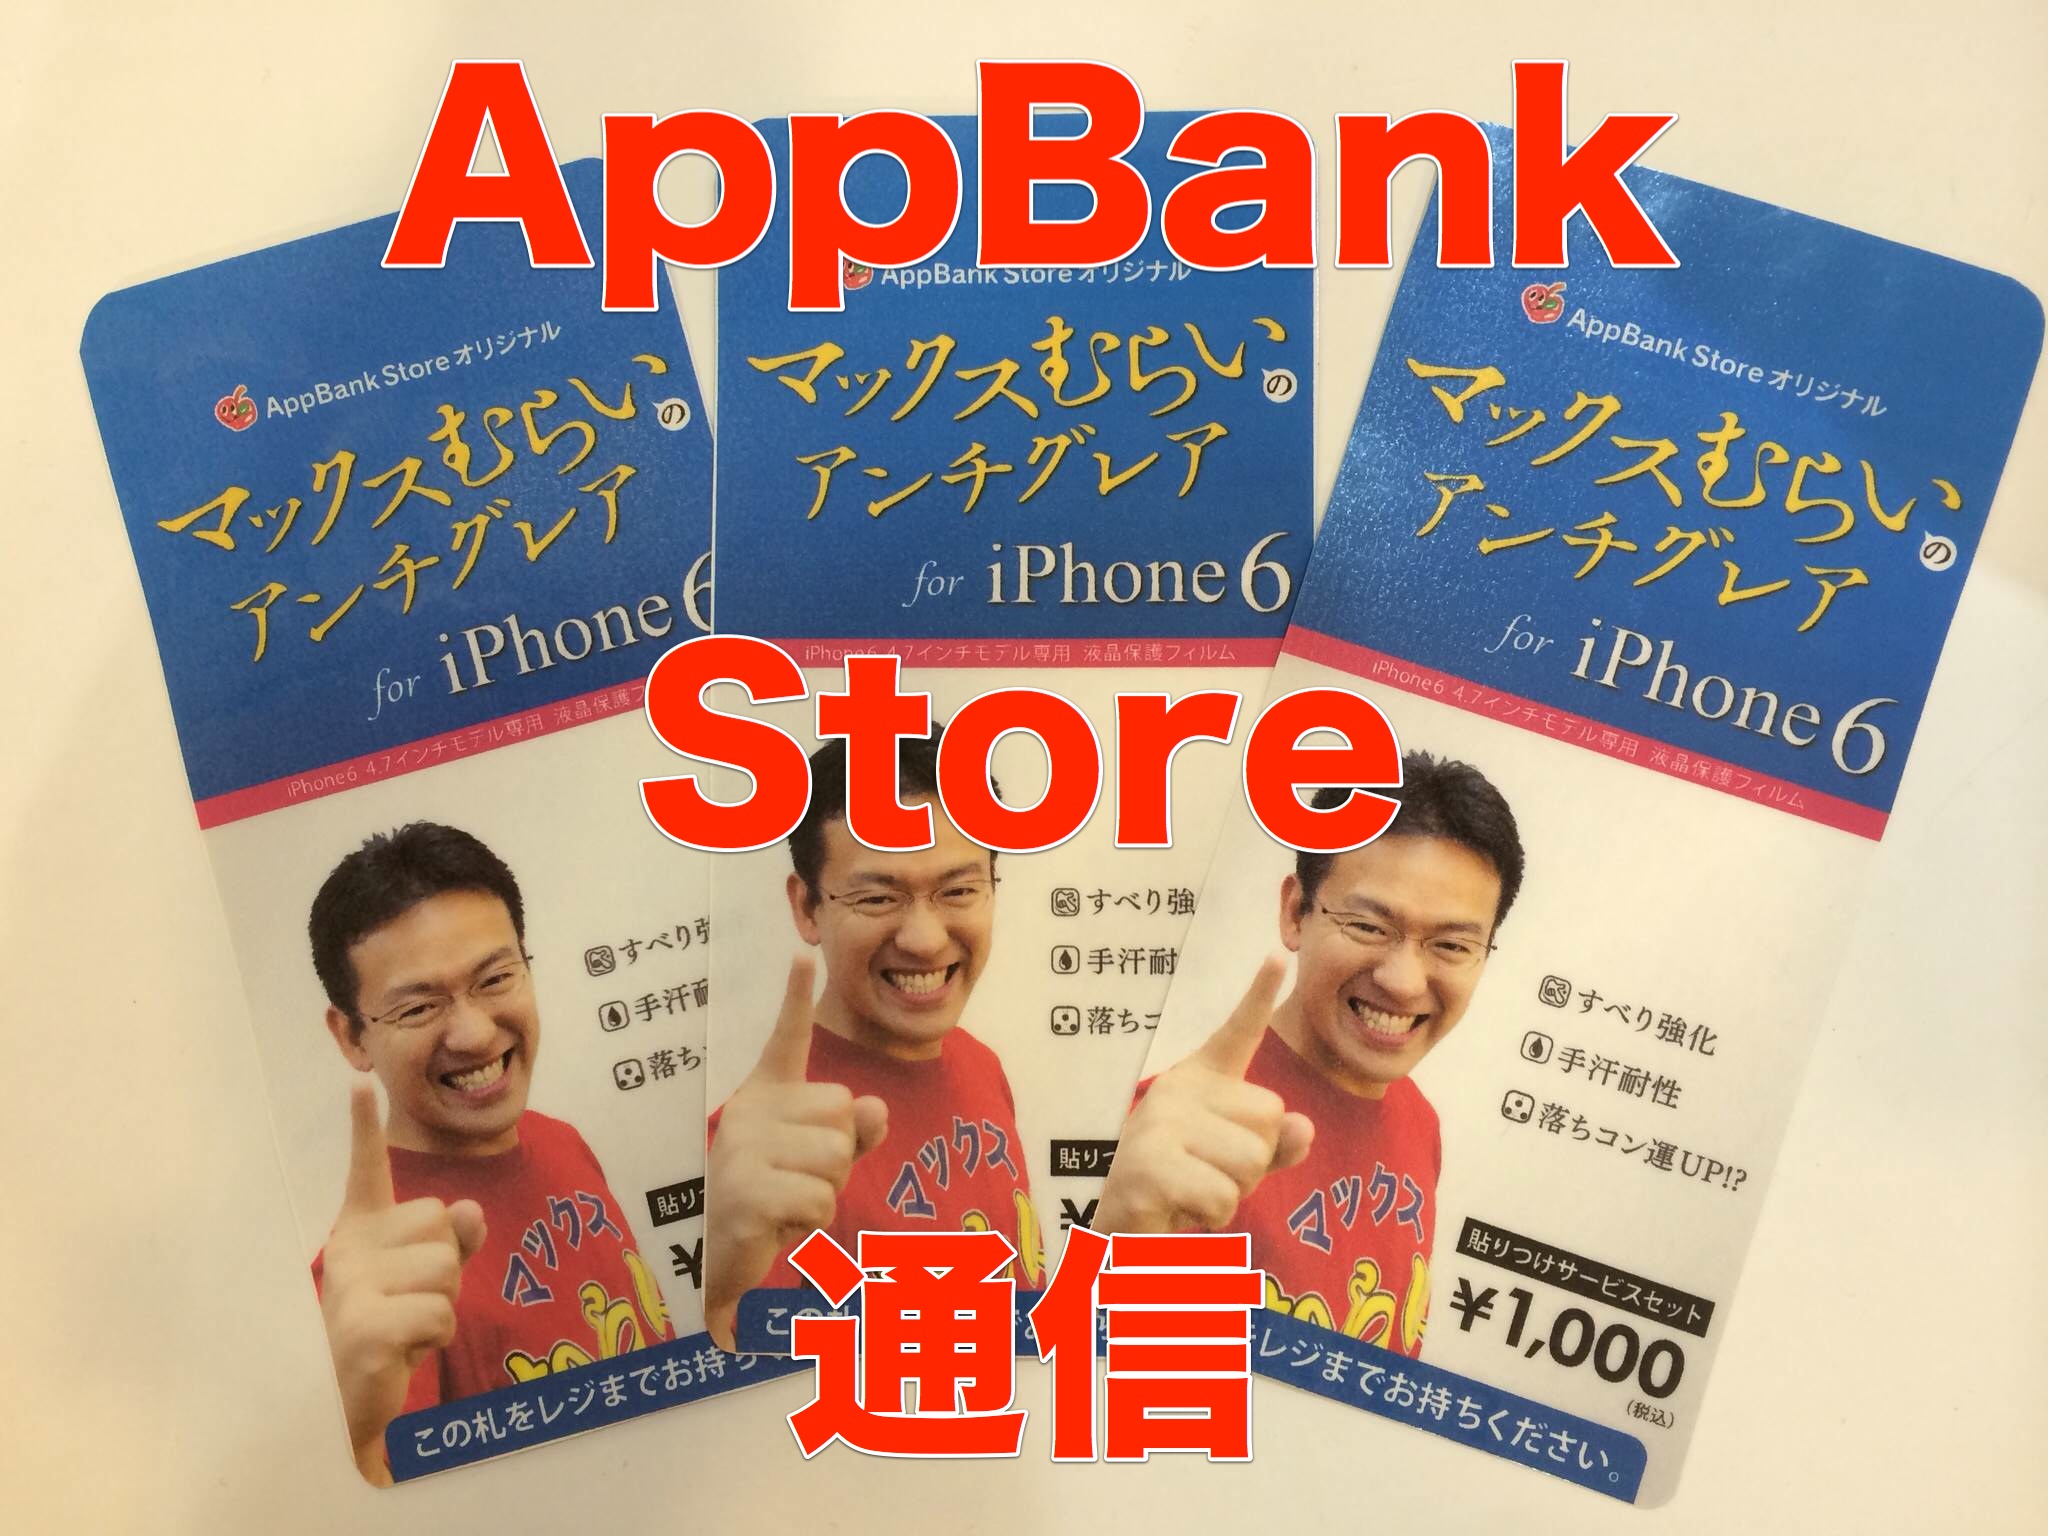 [AppBank Store通信] ニューオープンのAppBank Store 柏が初登場! オススメアイテムを紹介!